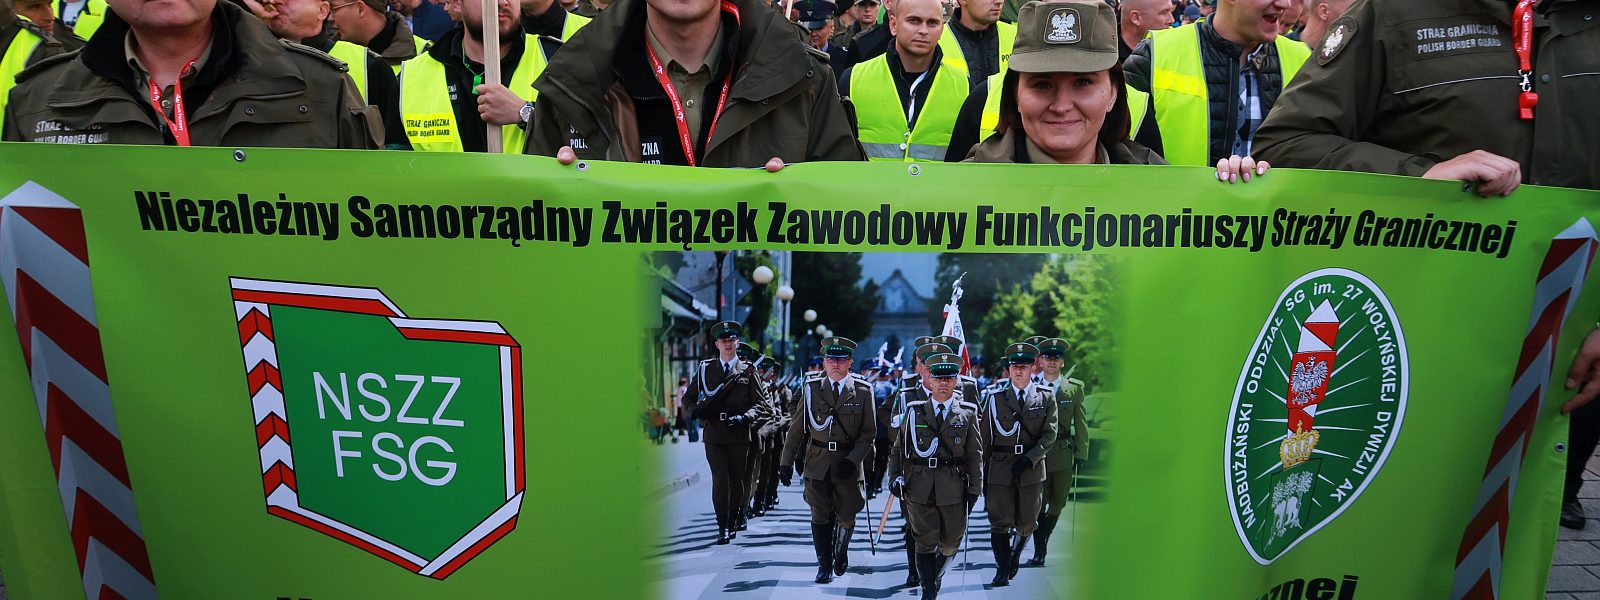 Manfestacja-Straz-Graniczna-Policja-Warszawa-2018- (241)